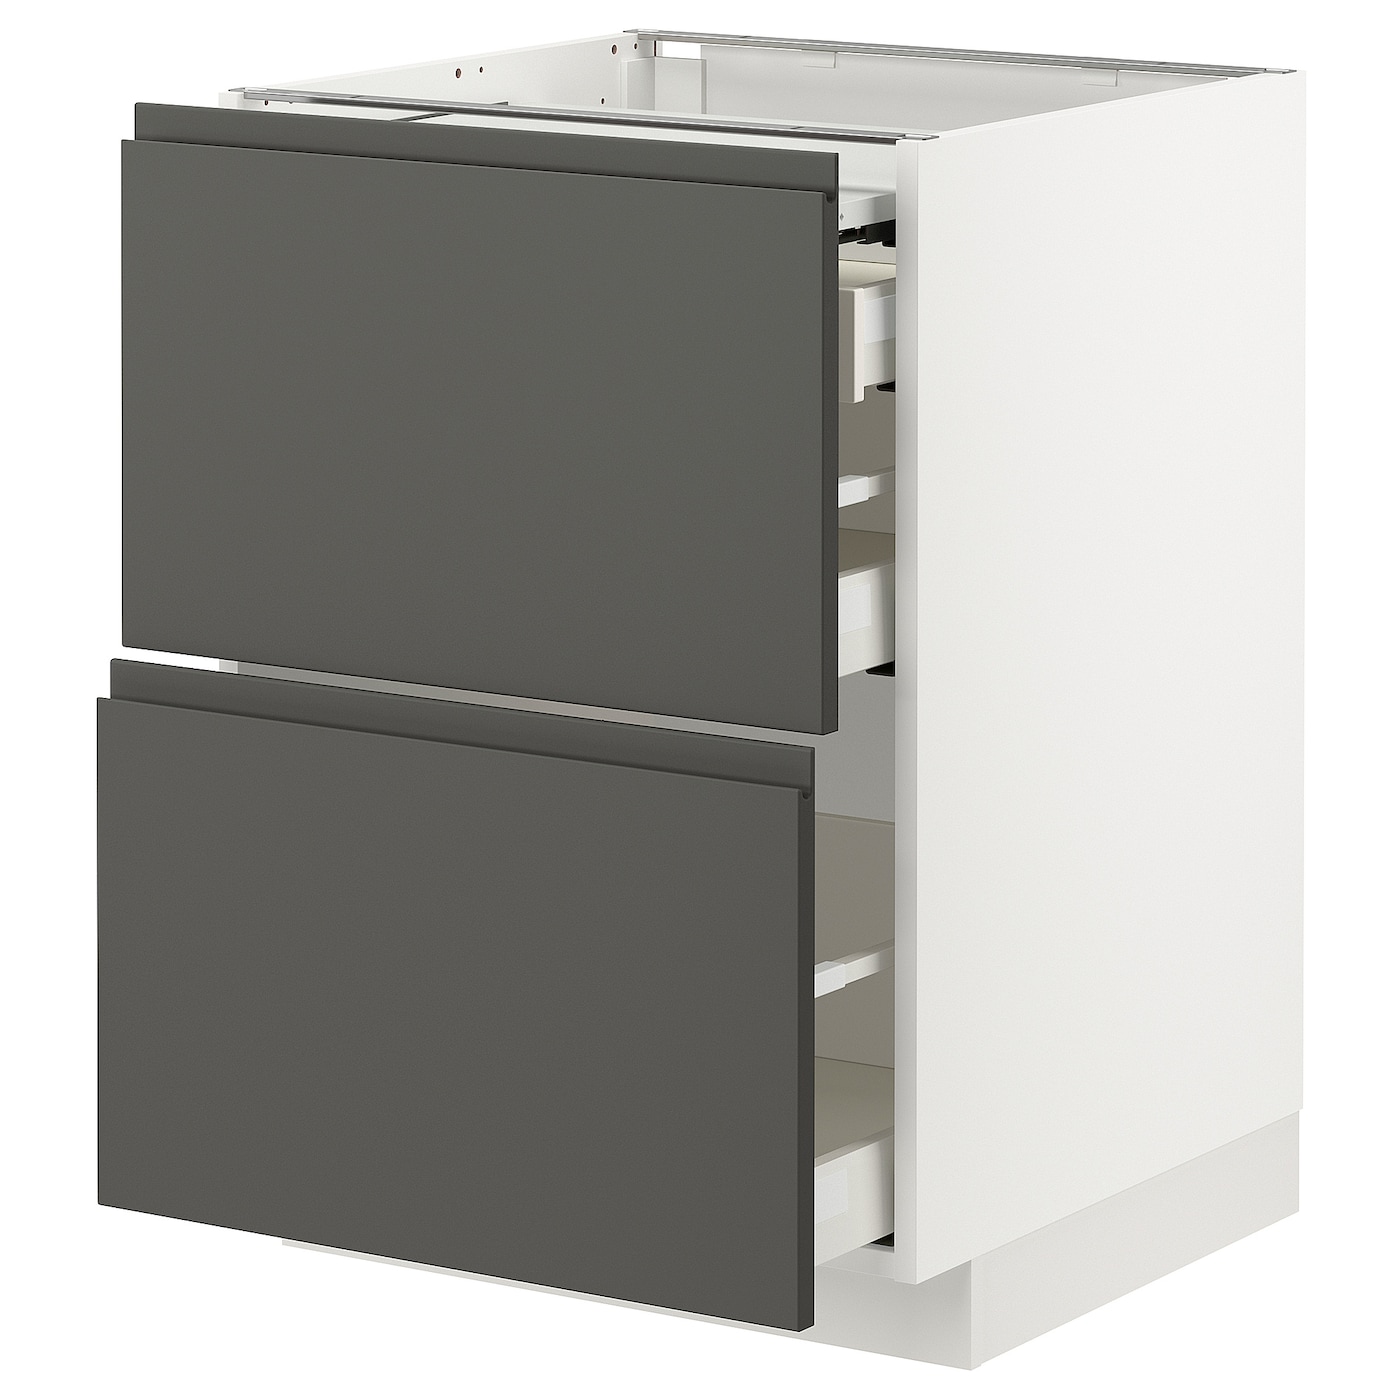 Напольный кухонный шкаф  - IKEA METOD MAXIMERA, 88x62x60см, белый/темно-серый, МЕТОД МАКСИМЕРА ИКЕА